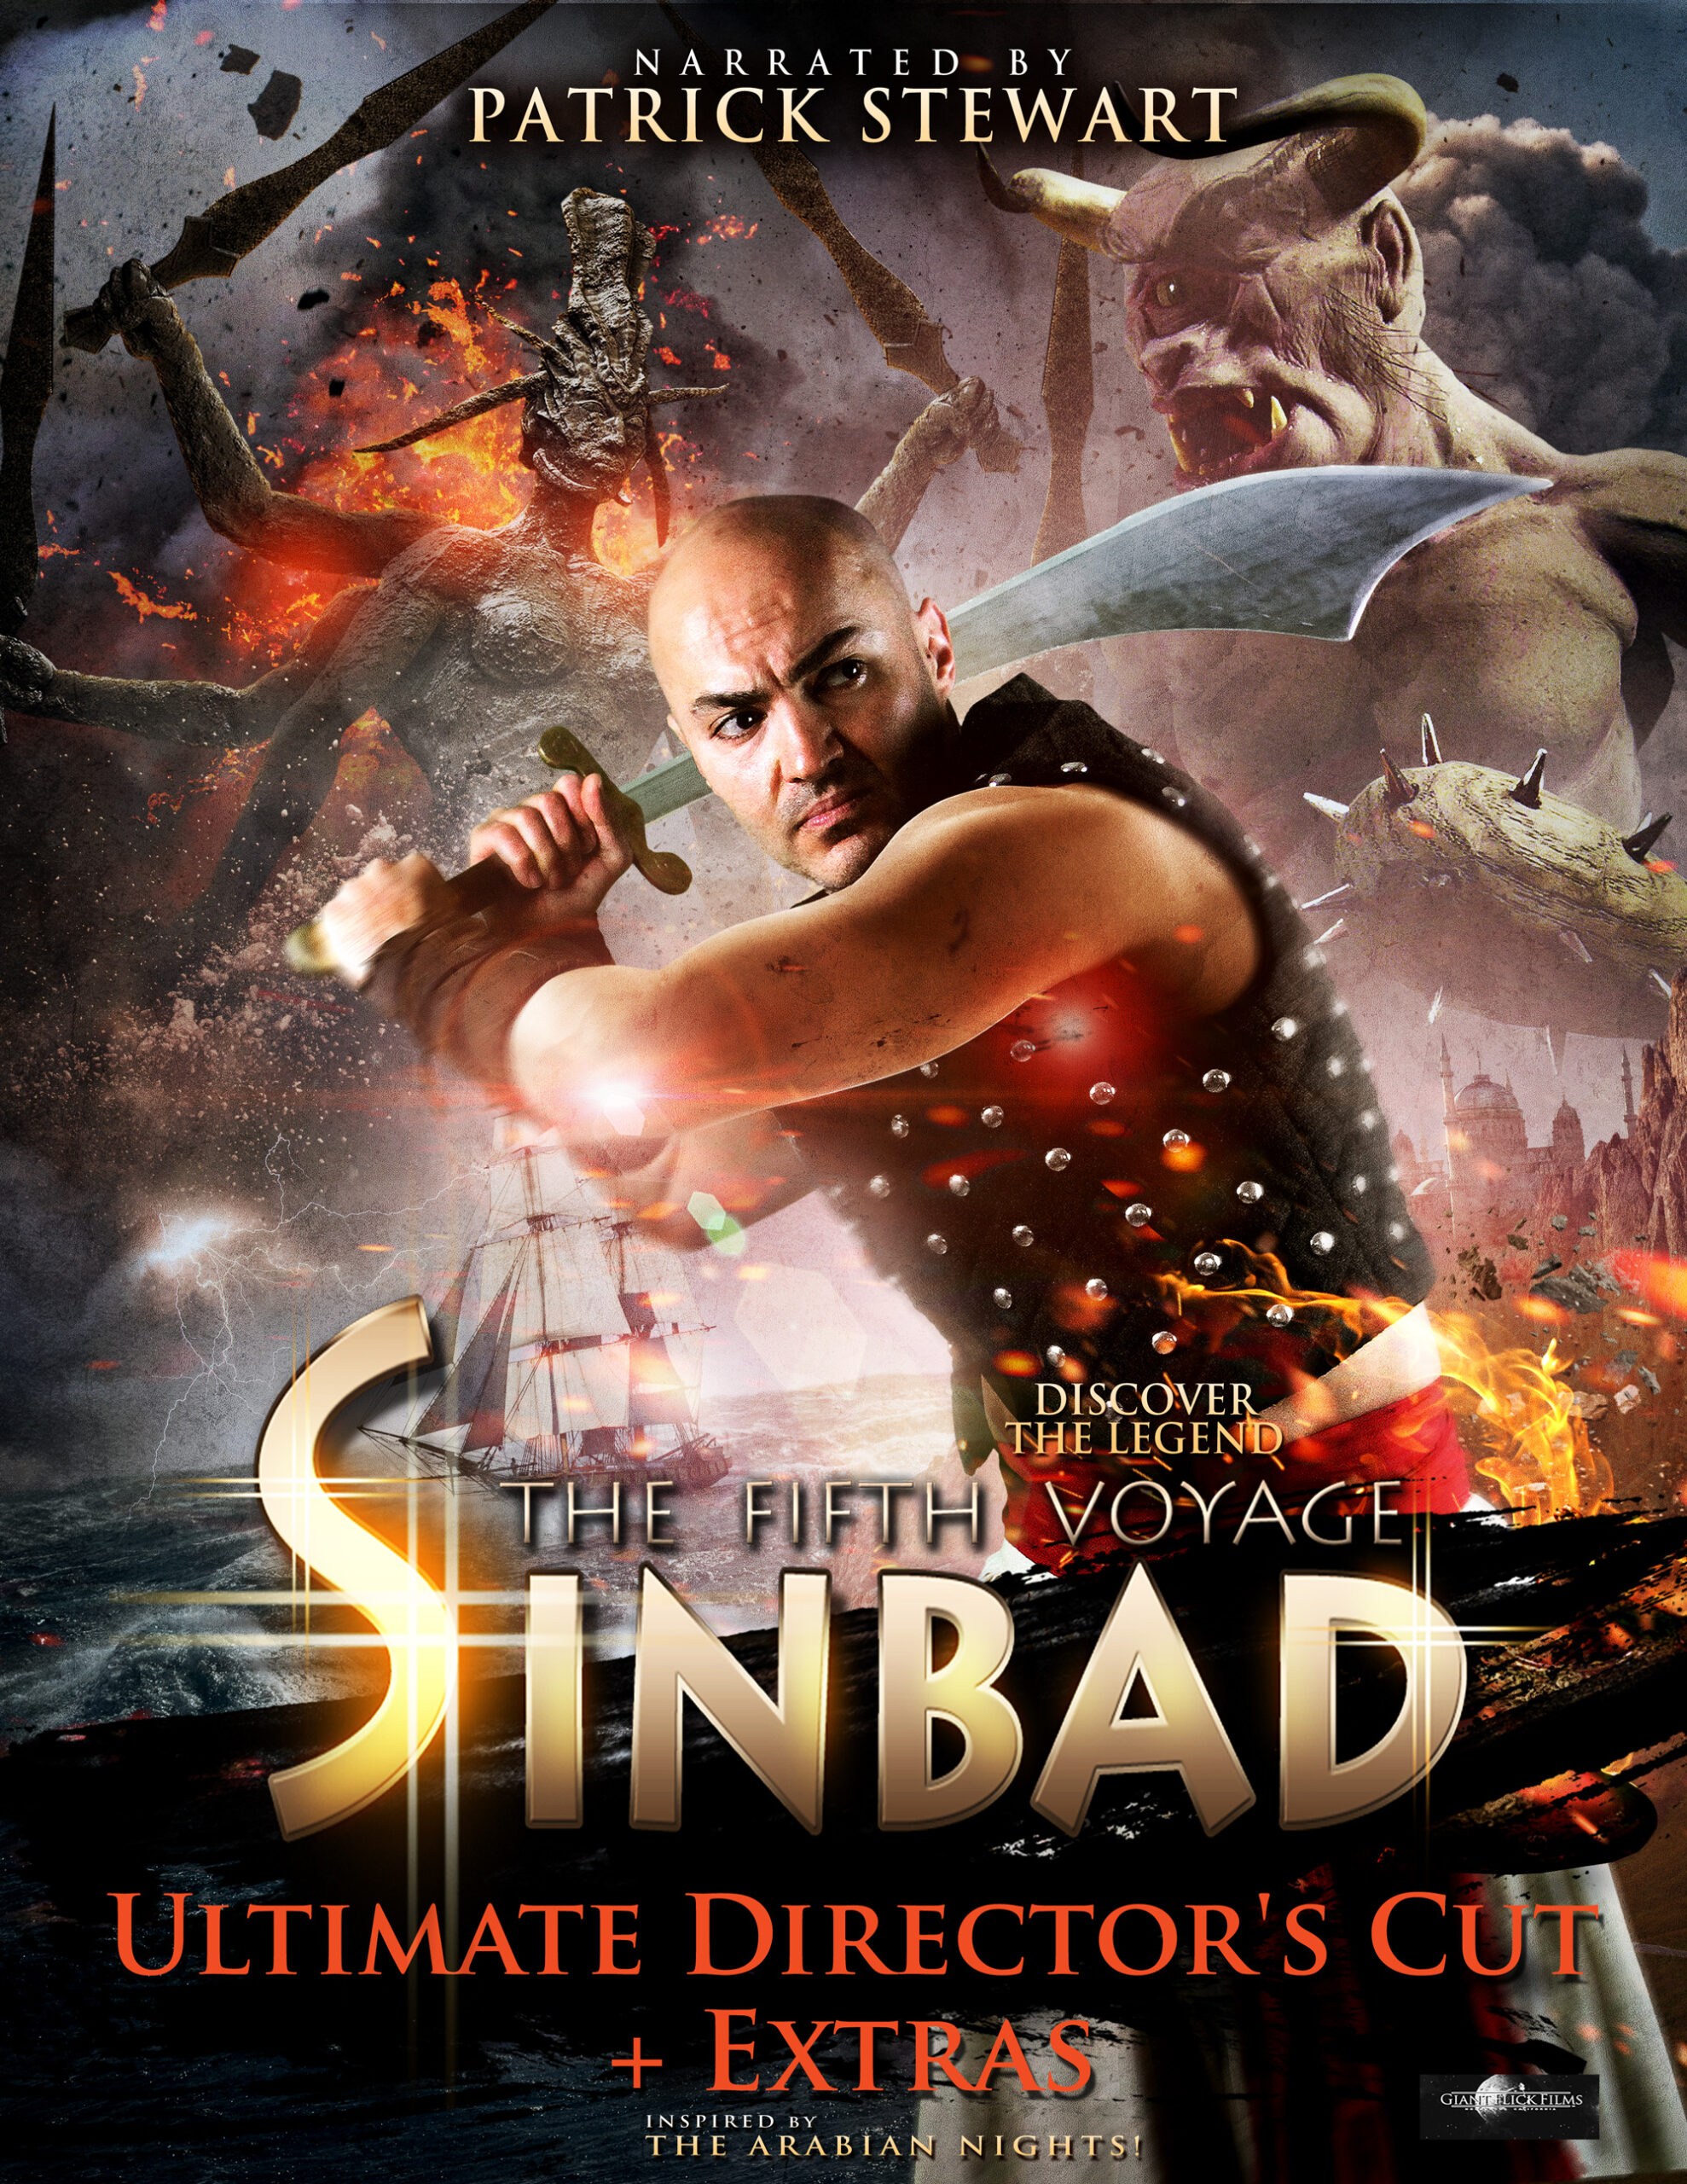 ดูหนังออนไลน์ Sinbad The Fifth Voyage (2014) ซินแบด พิชิตศึกสุดขอบฟ้า